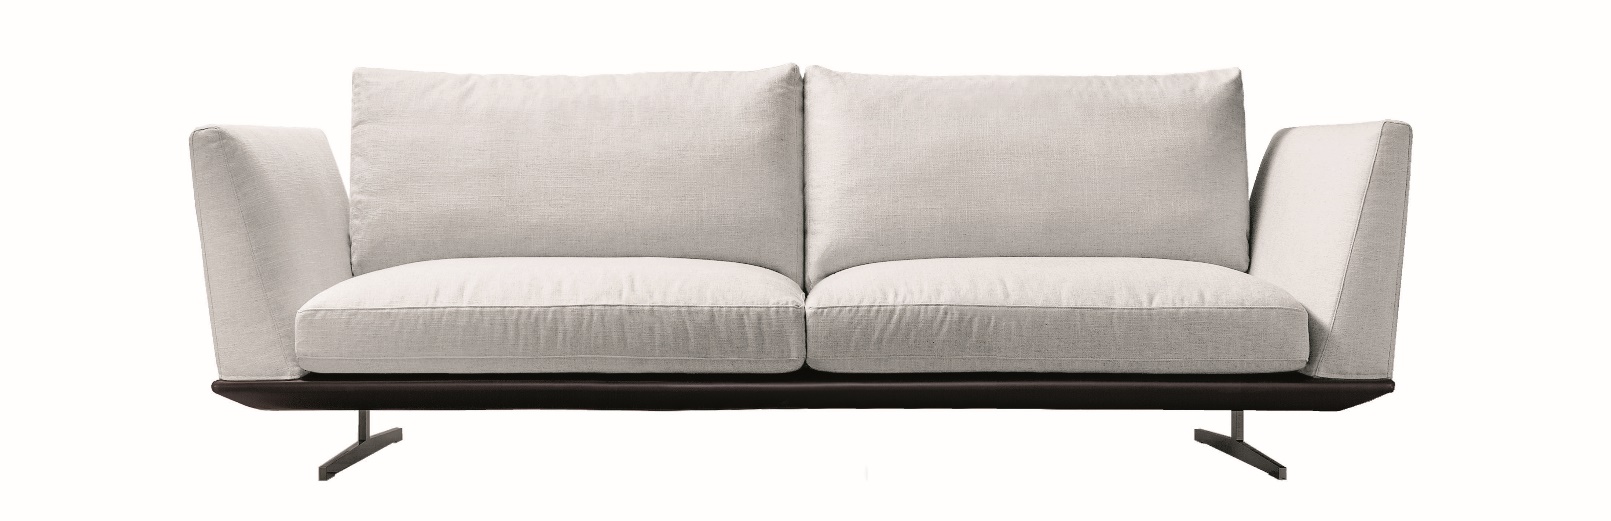 caratteristiche divano jason